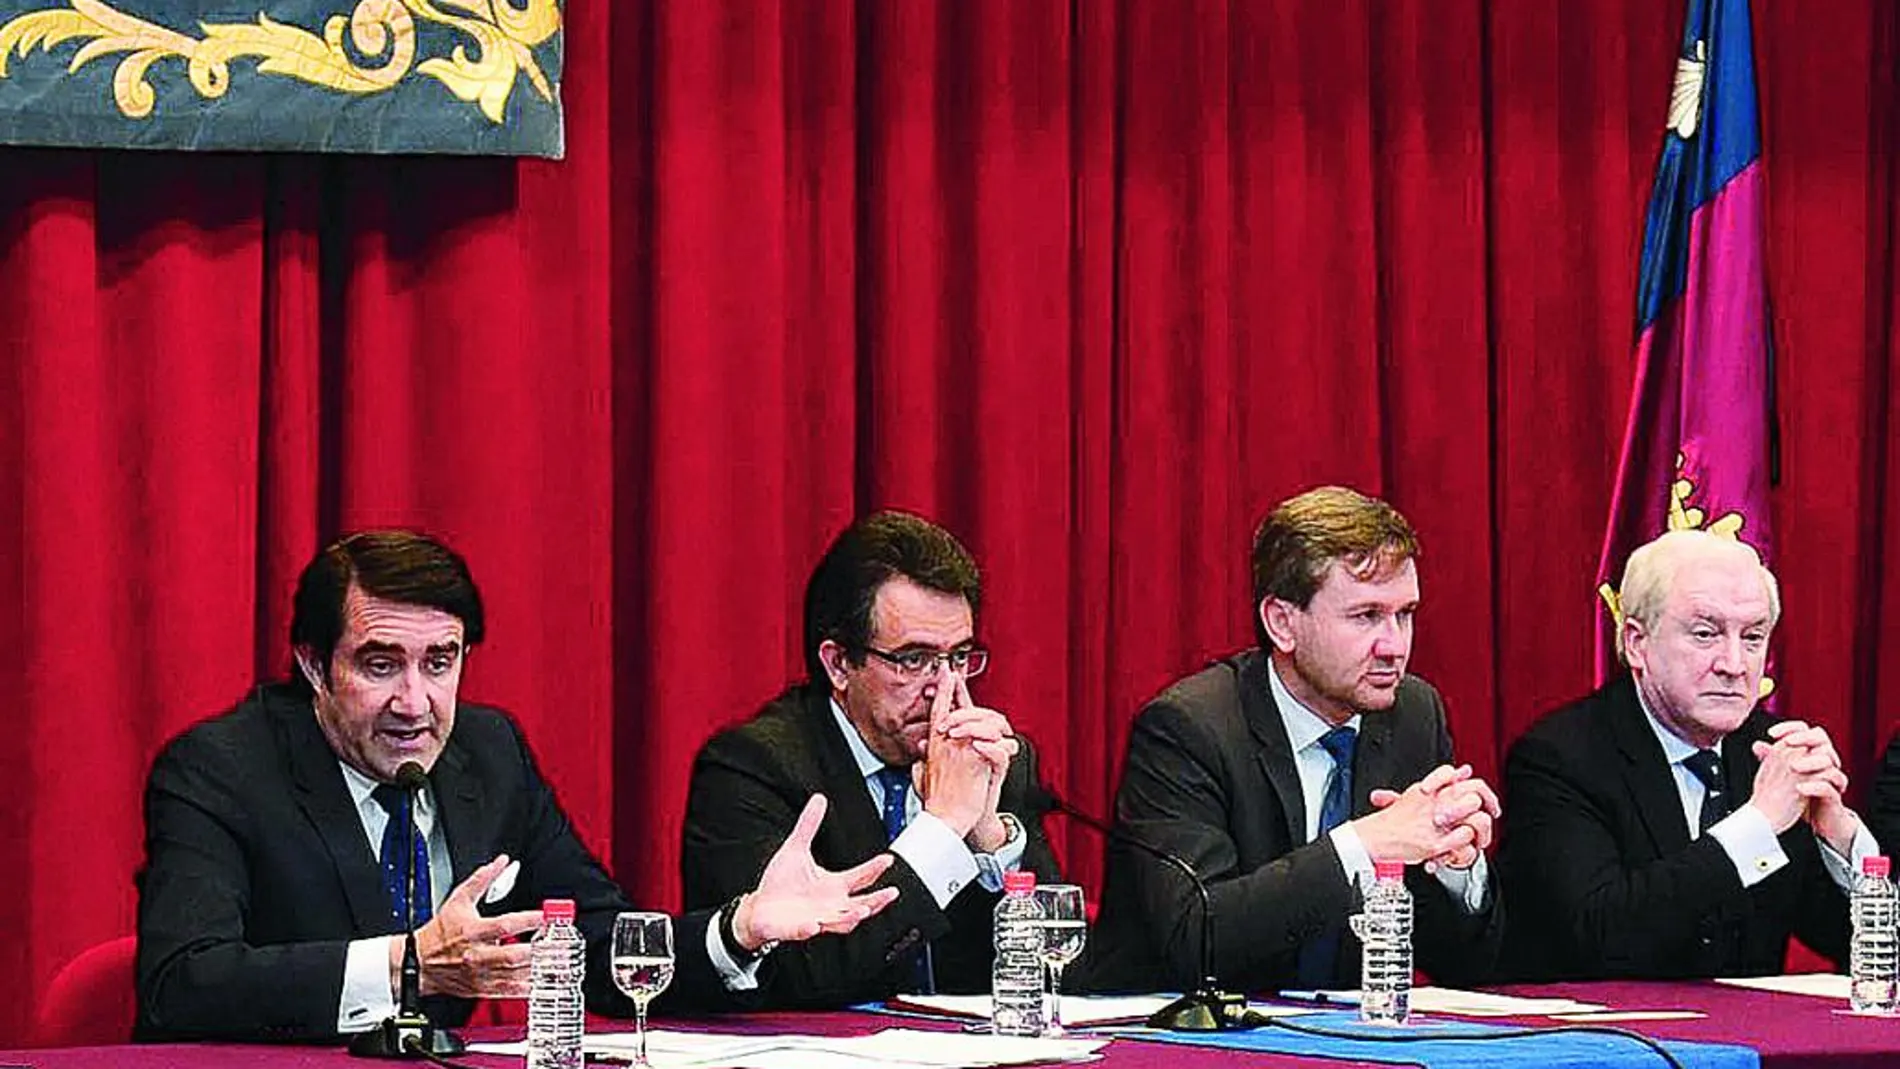 Suárez-Quiñones, Alfonso Murillo, Javier Lacalle y Antonio Miguel Méndez Pozo participan en el Congreso en Burgos